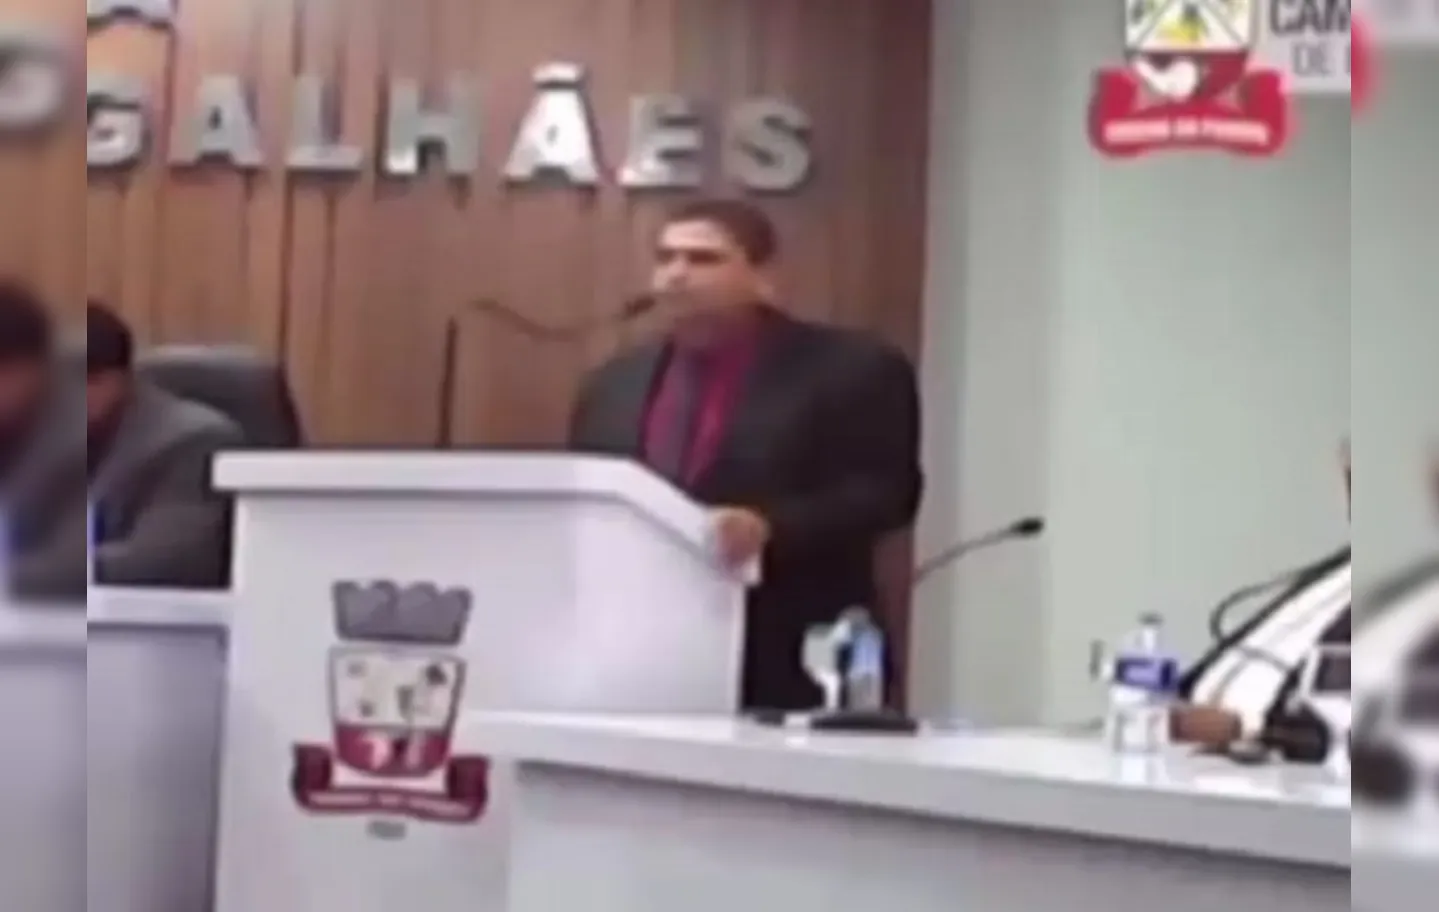 Discurso do vereador foi em relação ao voto dado por ele no deputado estadual Luciano Simões (União Brasil)